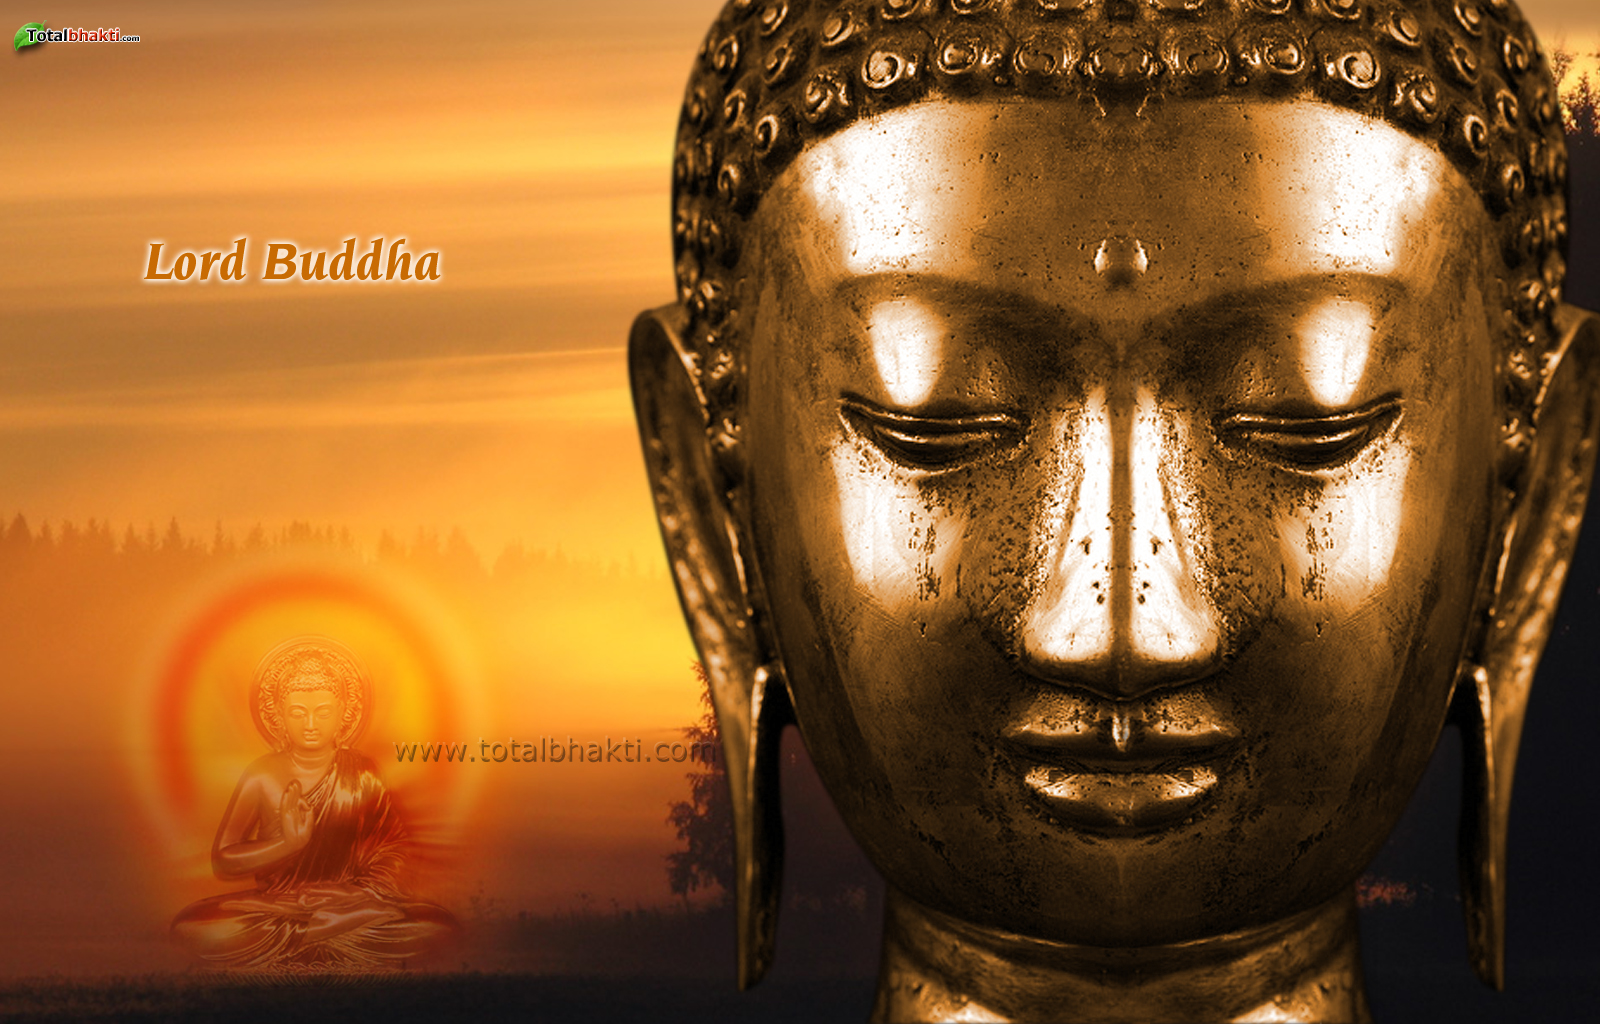 Lord Buddha Pics Image